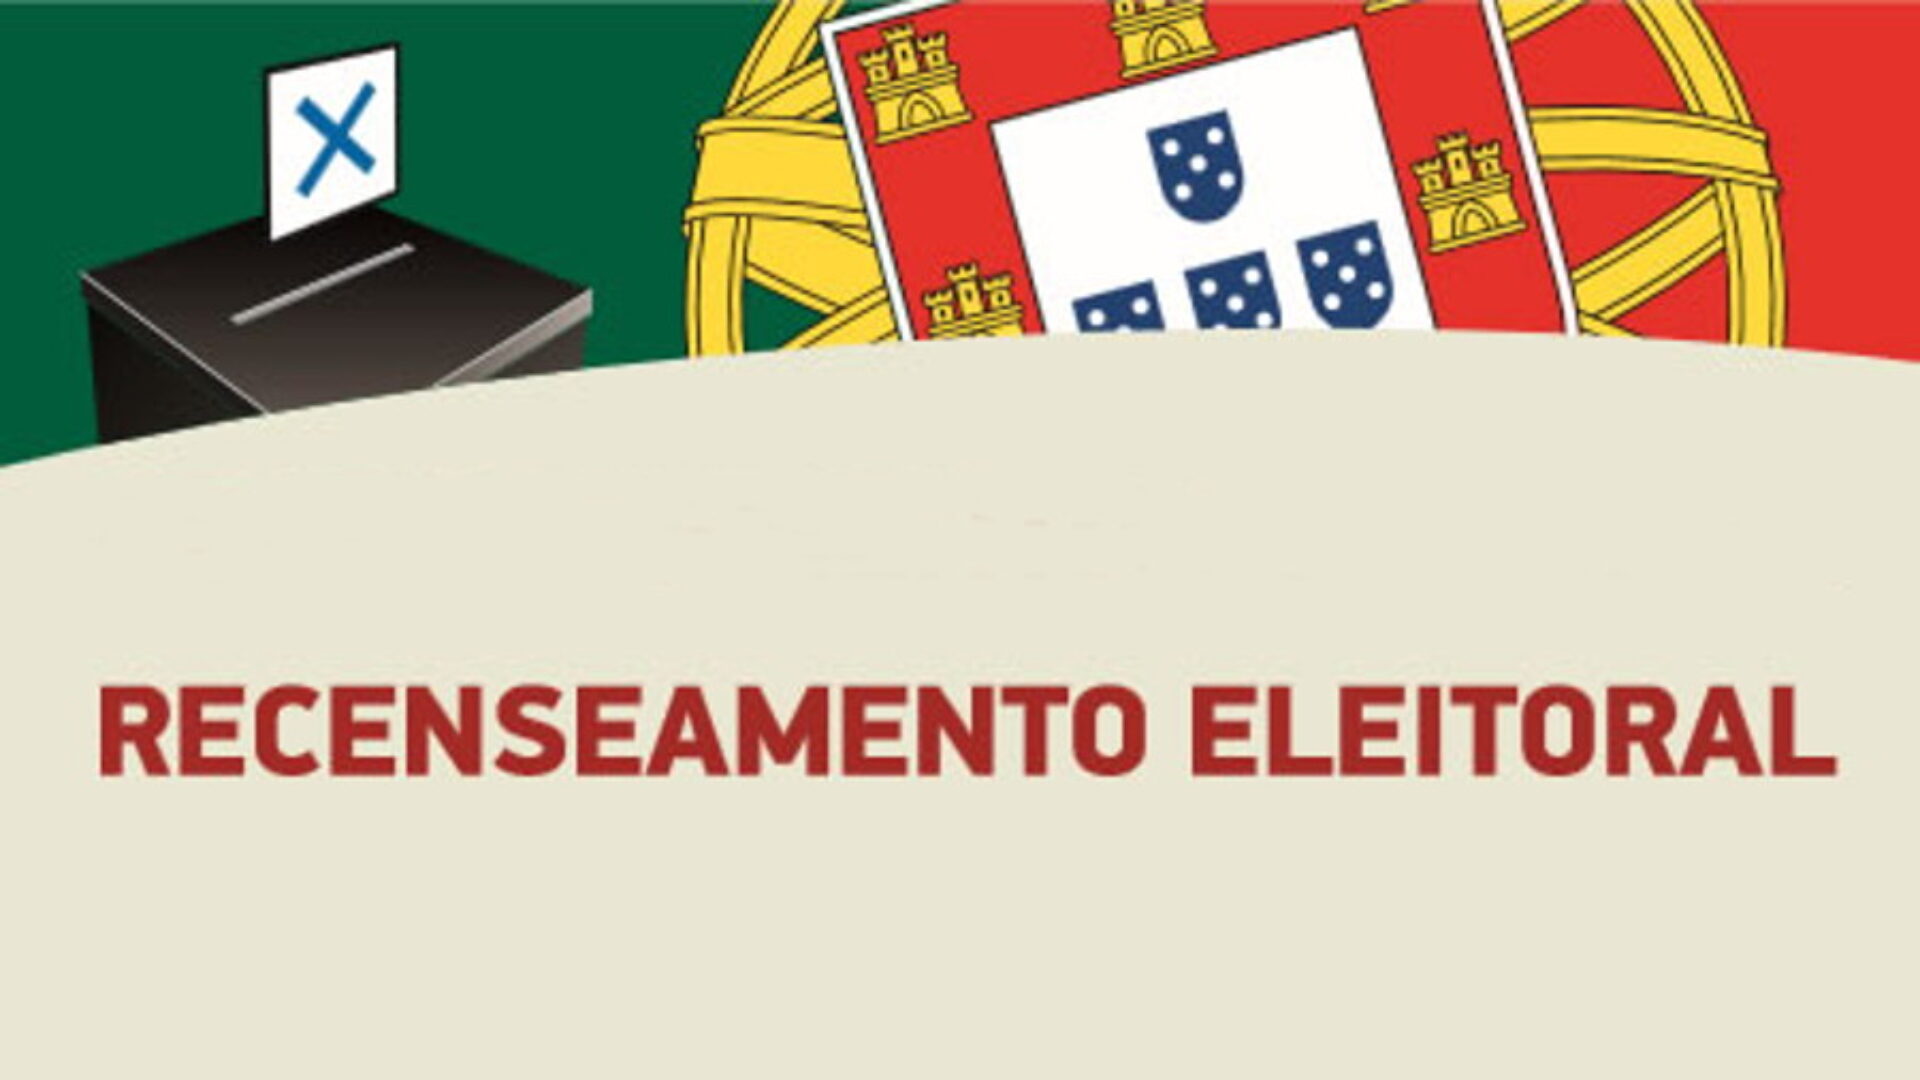 Recenseamento Eleitoral - Consulta Anual de Cadernos Eleitorais